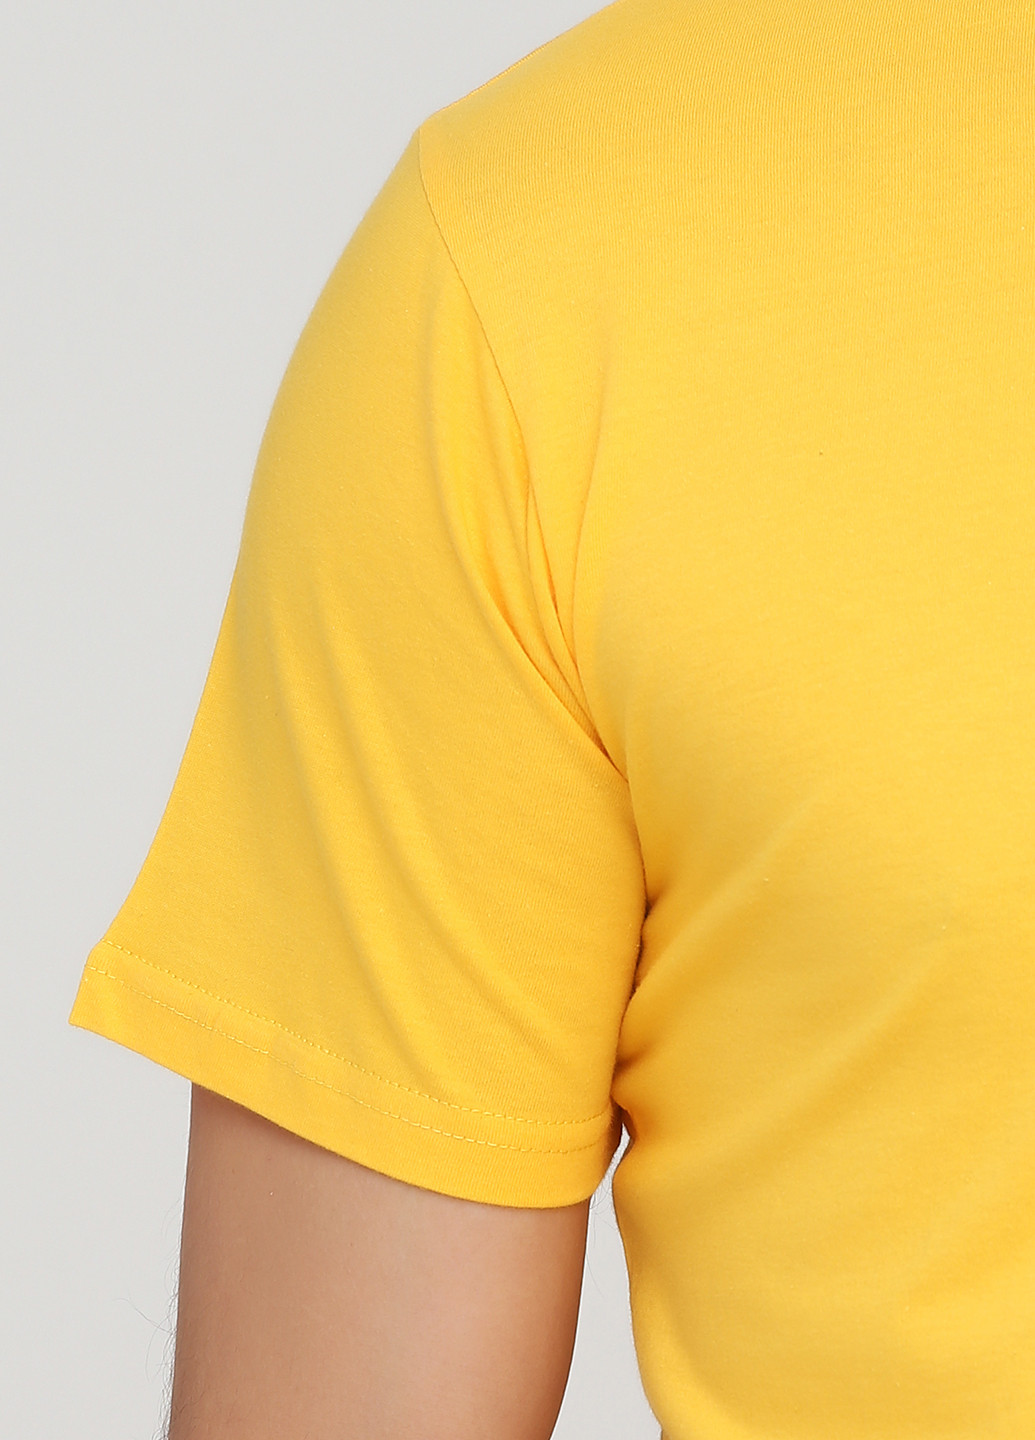 Жовта футболка чоловіча 19м319-17 синя(електро) з коротким рукавом Malta